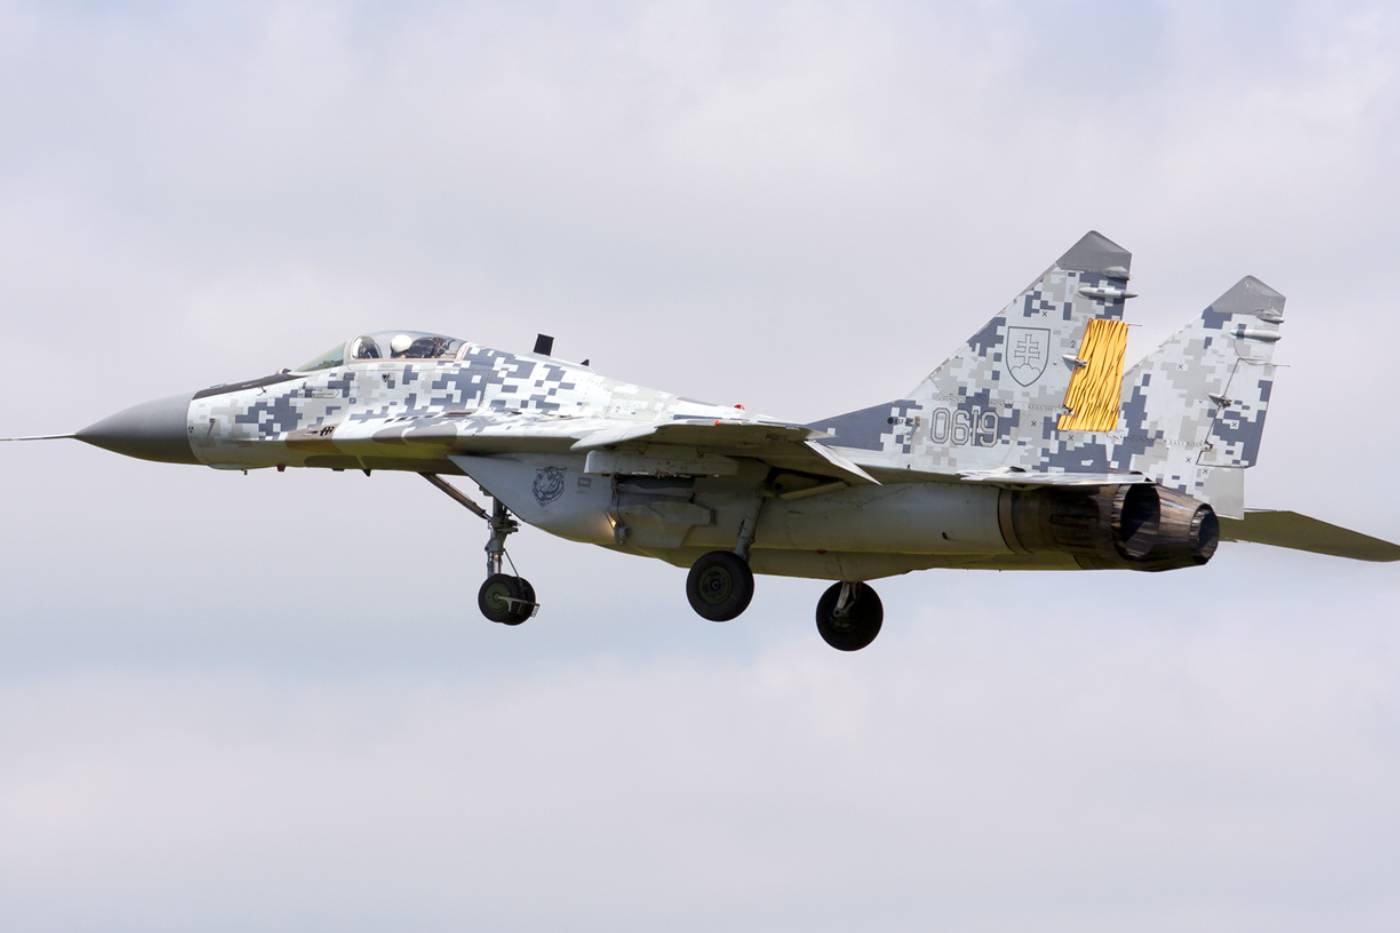 ポーランドとチェコが領空保護をスロバキアに提供、MiG-29提供へ前進